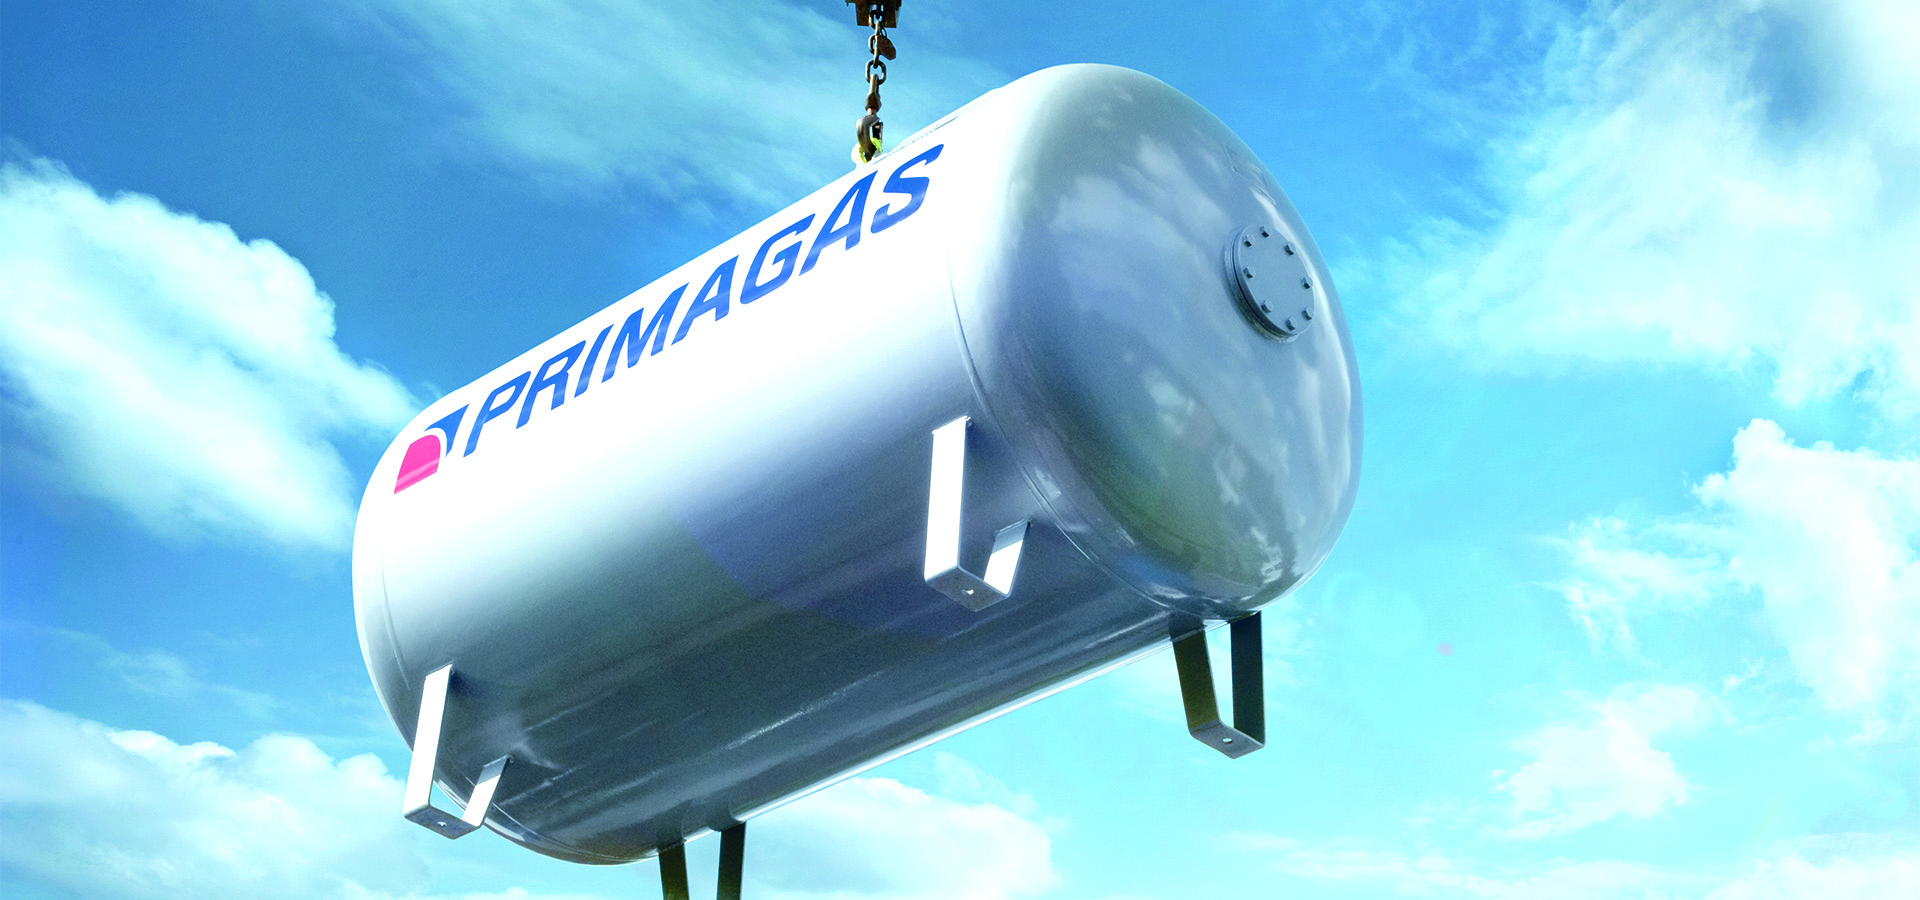 PRIMAGAS - Das Unternehmen, Tank am Kran mit blauem Himmel